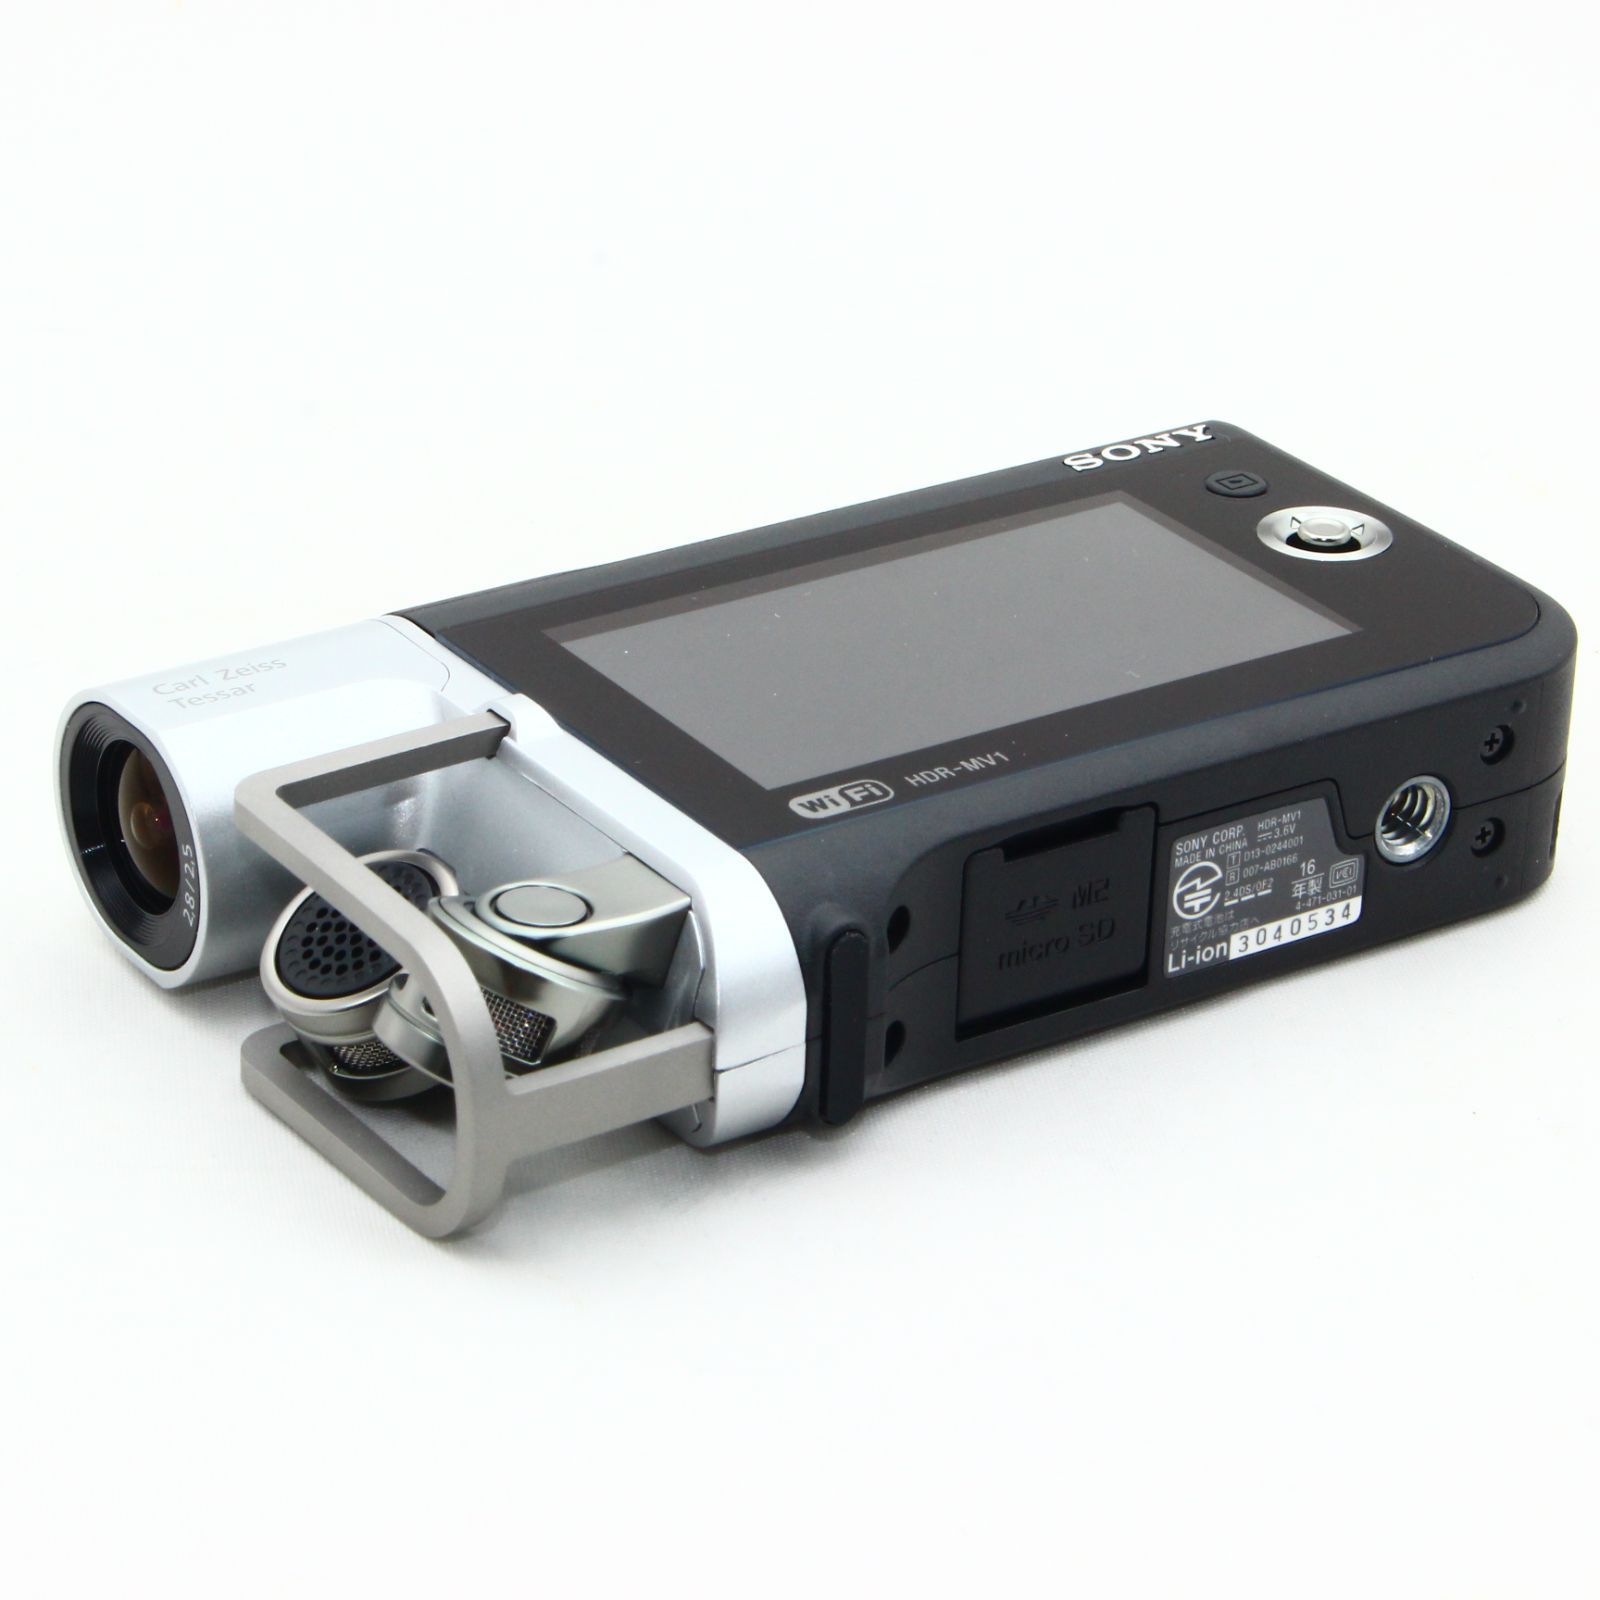 純正ストア SONY HDR-MV1(別売ケース付き内容修正済) - カメラ